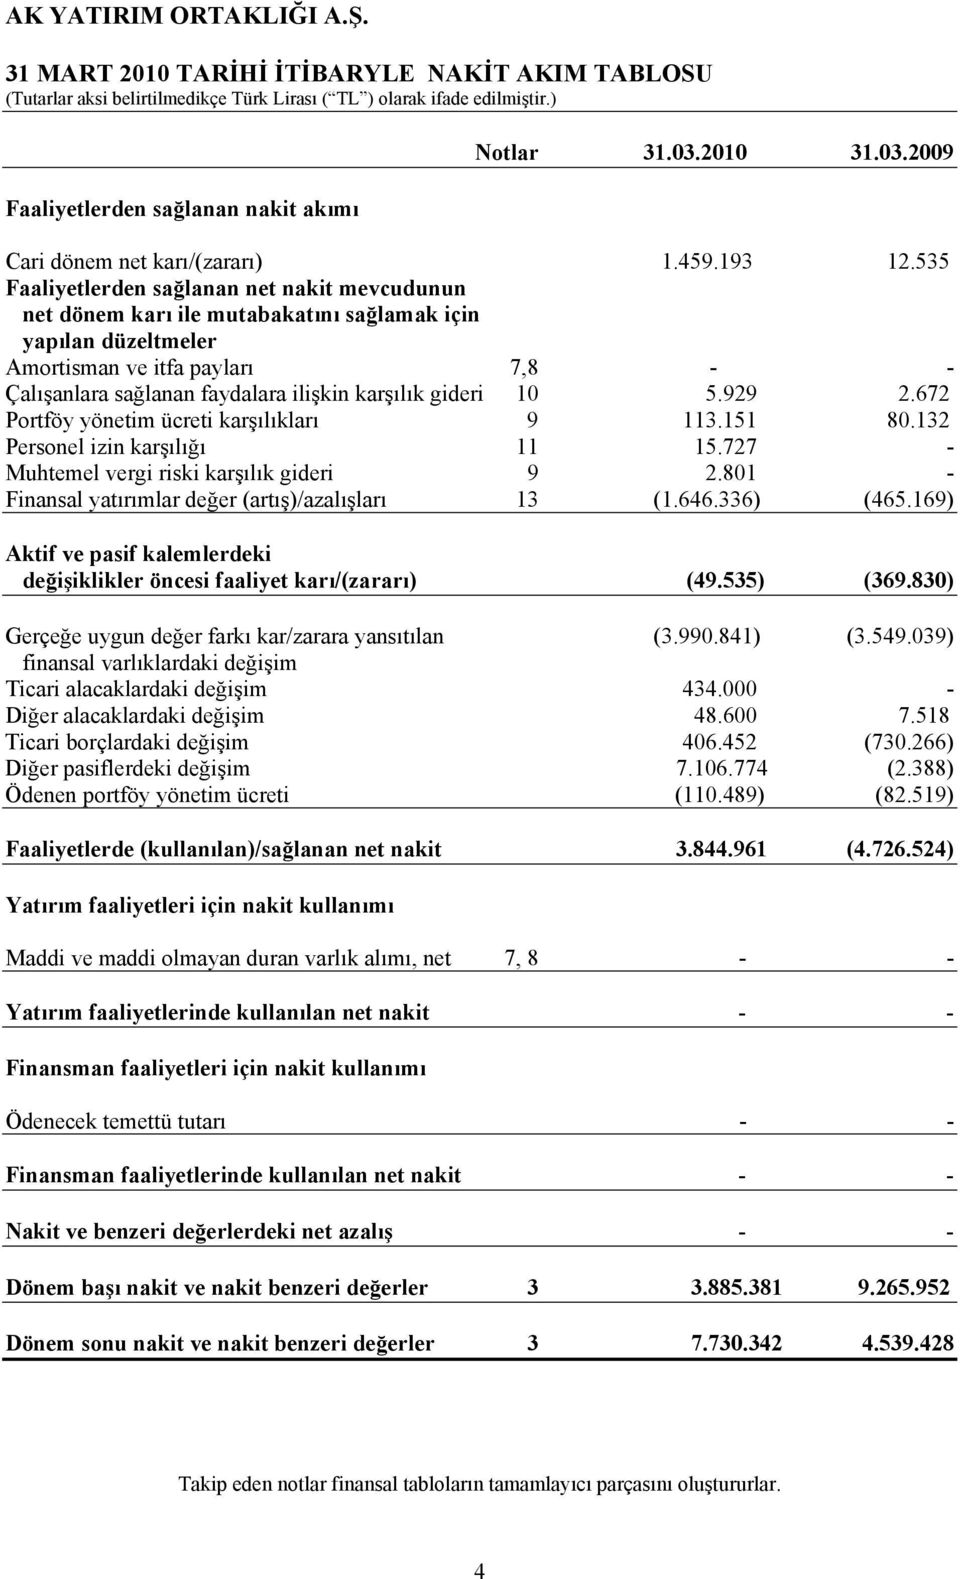 gideri 10 5.929 2.672 Portföy yönetim ücreti karşılıkları 9 113.151 80.132 Personel izin karşılığı 11 15.727 - Muhtemel vergi riski karşılık gideri 9 2.